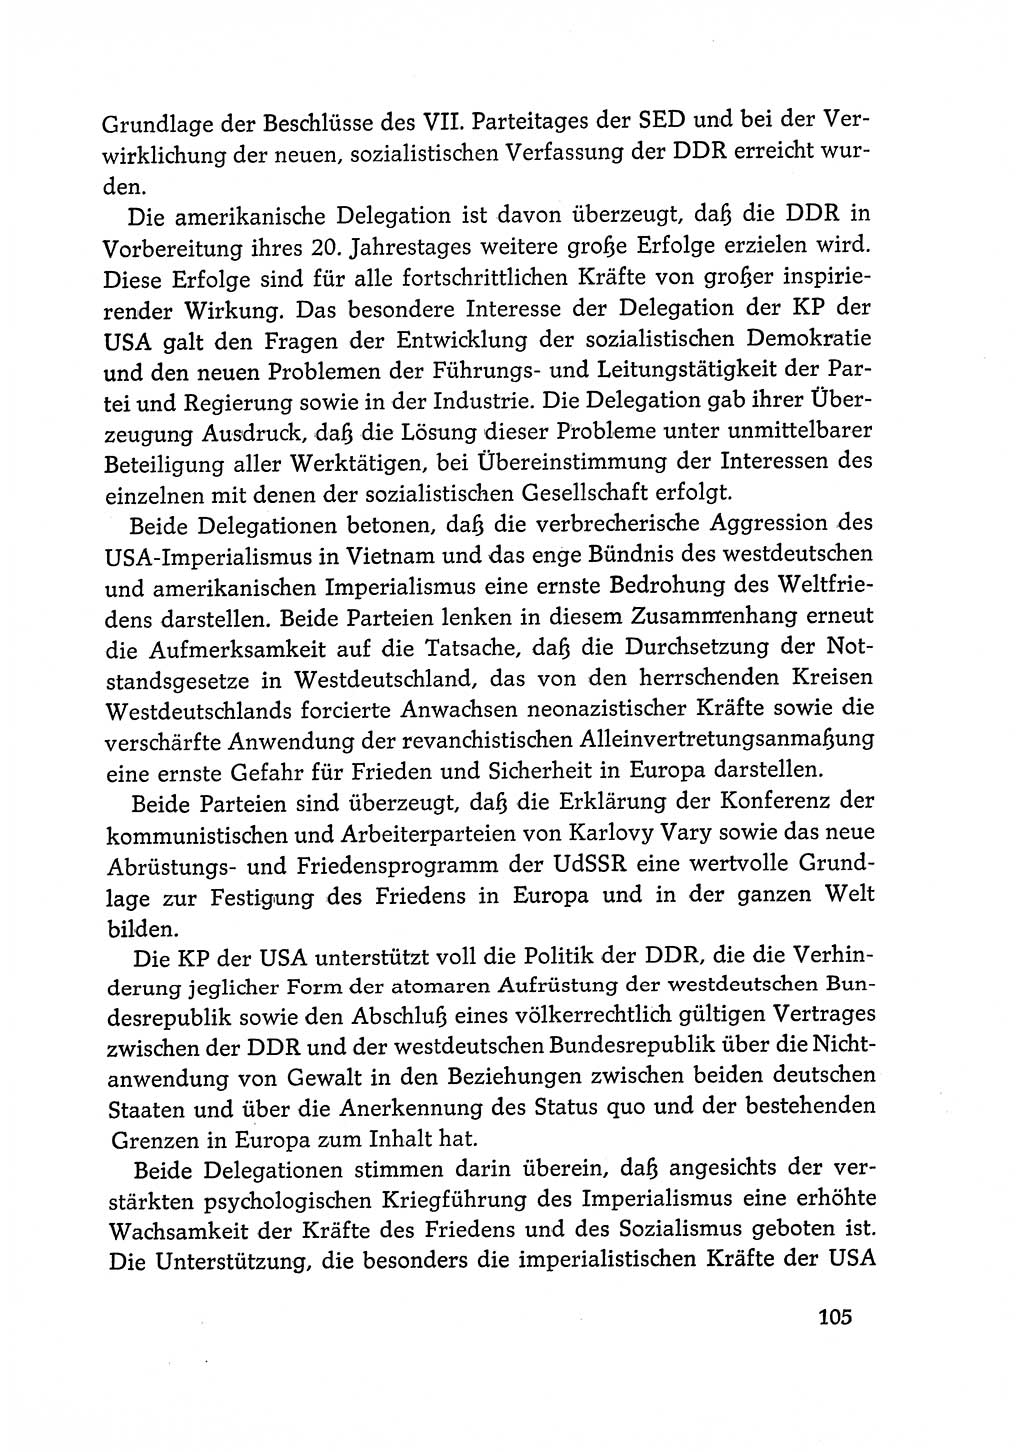 Dokumente der Sozialistischen Einheitspartei Deutschlands (SED) [Deutsche Demokratische Republik (DDR)] 1968-1969, Seite 105 (Dok. SED DDR 1968-1969, S. 105)